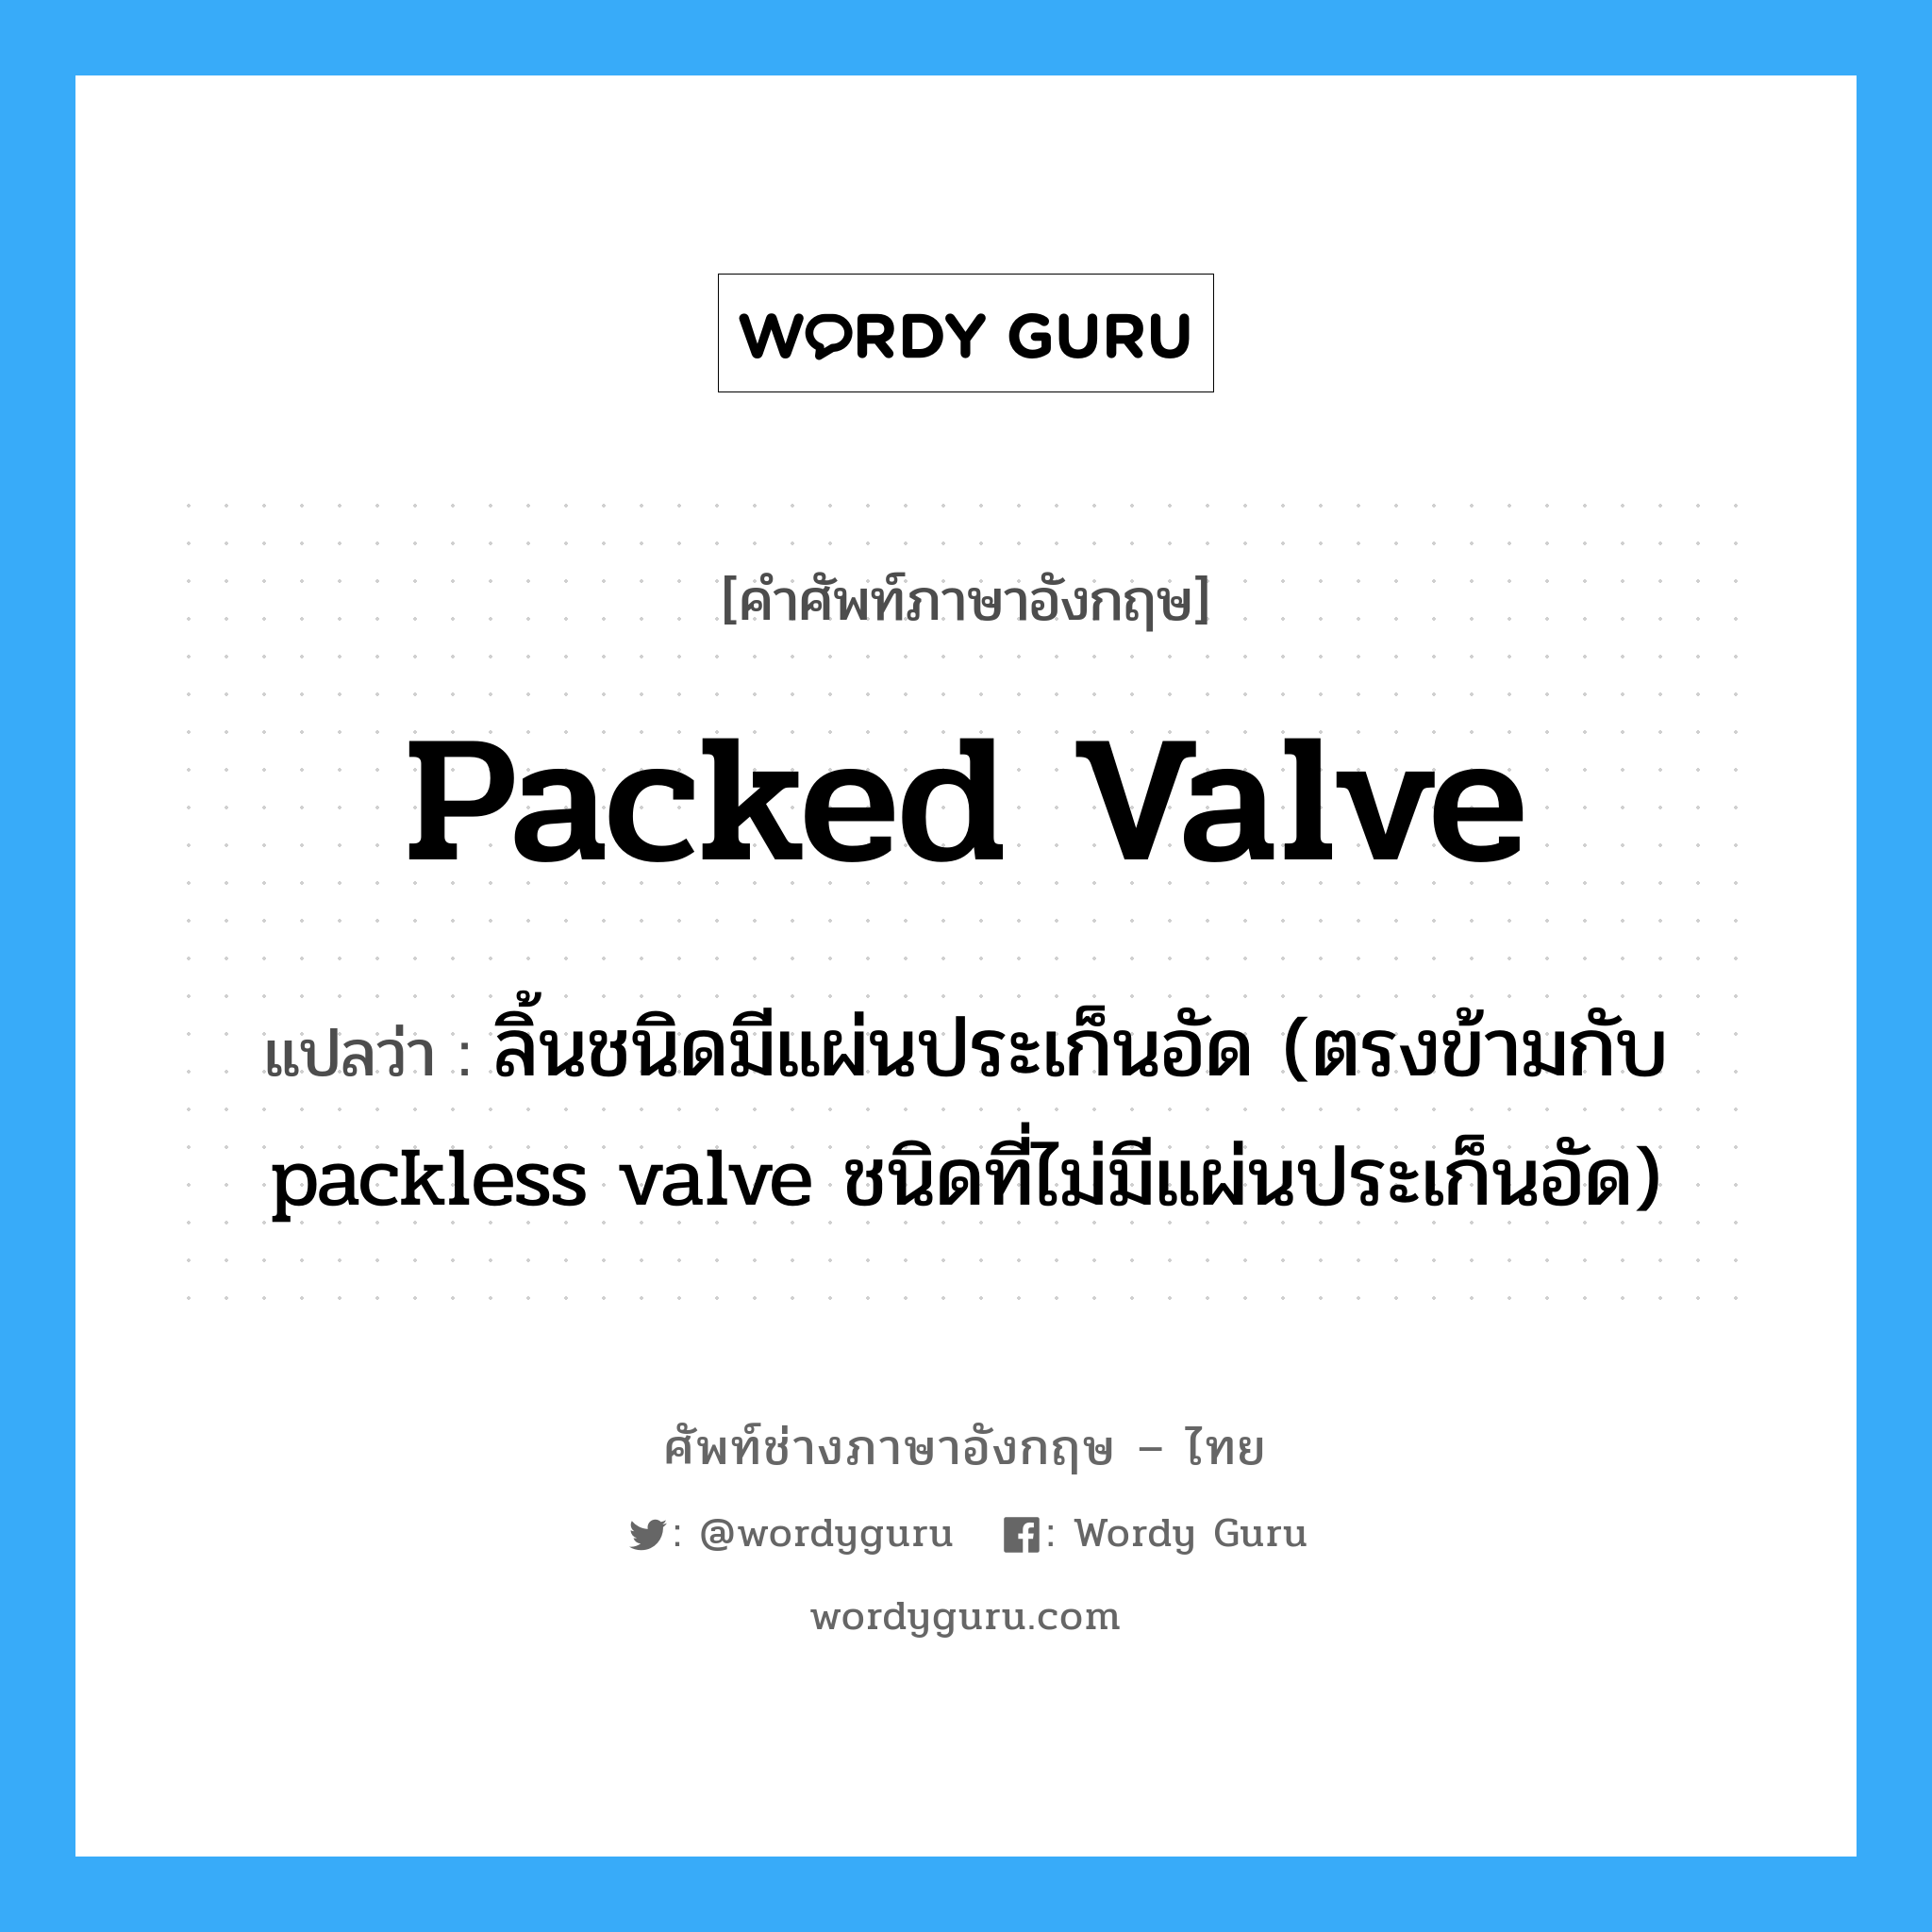 packed valve แปลว่า?, คำศัพท์ช่างภาษาอังกฤษ - ไทย packed valve คำศัพท์ภาษาอังกฤษ packed valve แปลว่า ลิ้นชนิดมีแผ่นประเก็นอัด (ตรงข้ามกับ packless valve ชนิดที่ไม่มีแผ่นประเก็นอัด)